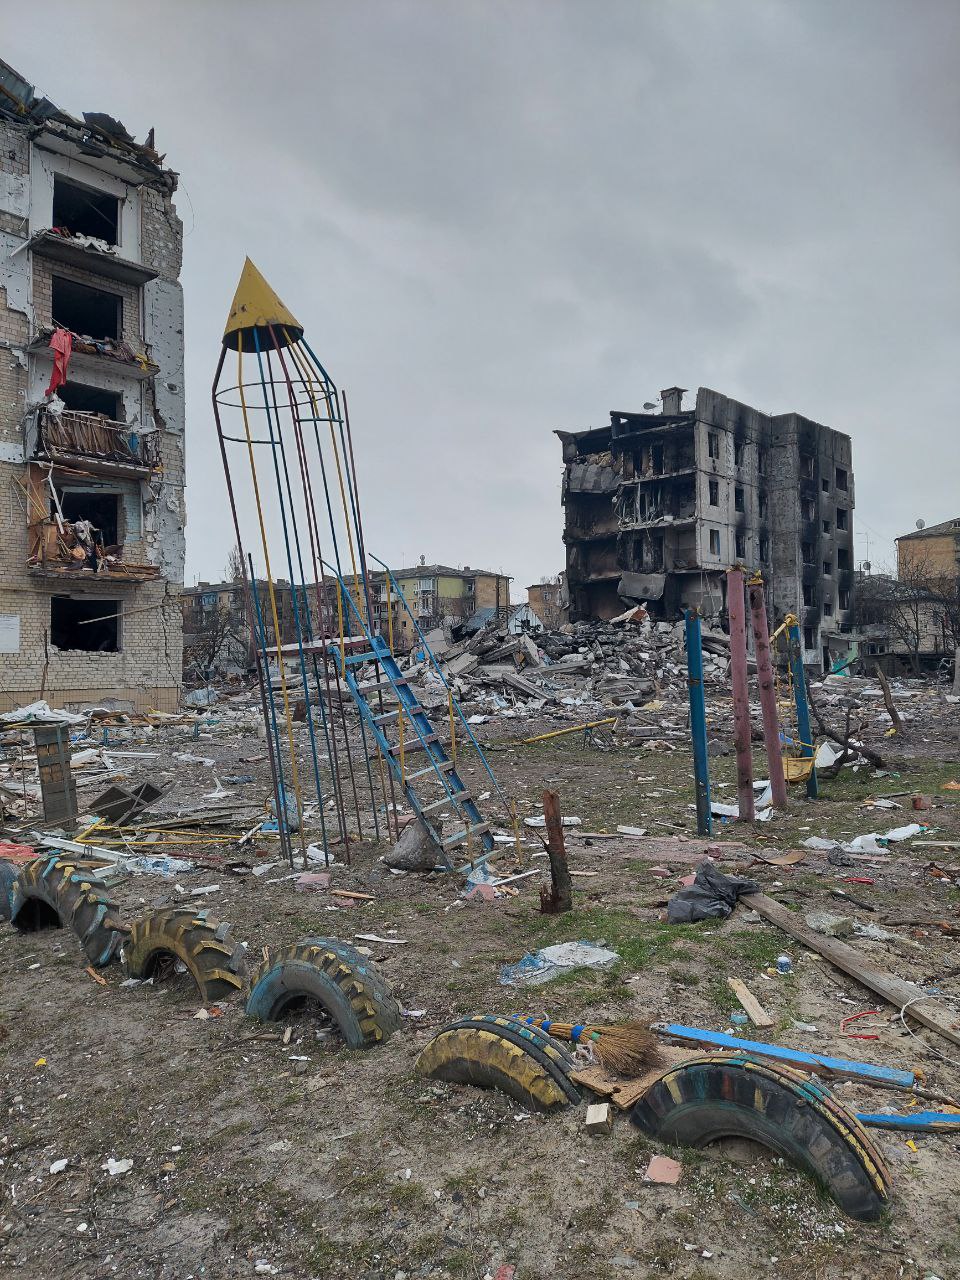 Бородянку під Києвом майже повністю зруйновано — фото, відео